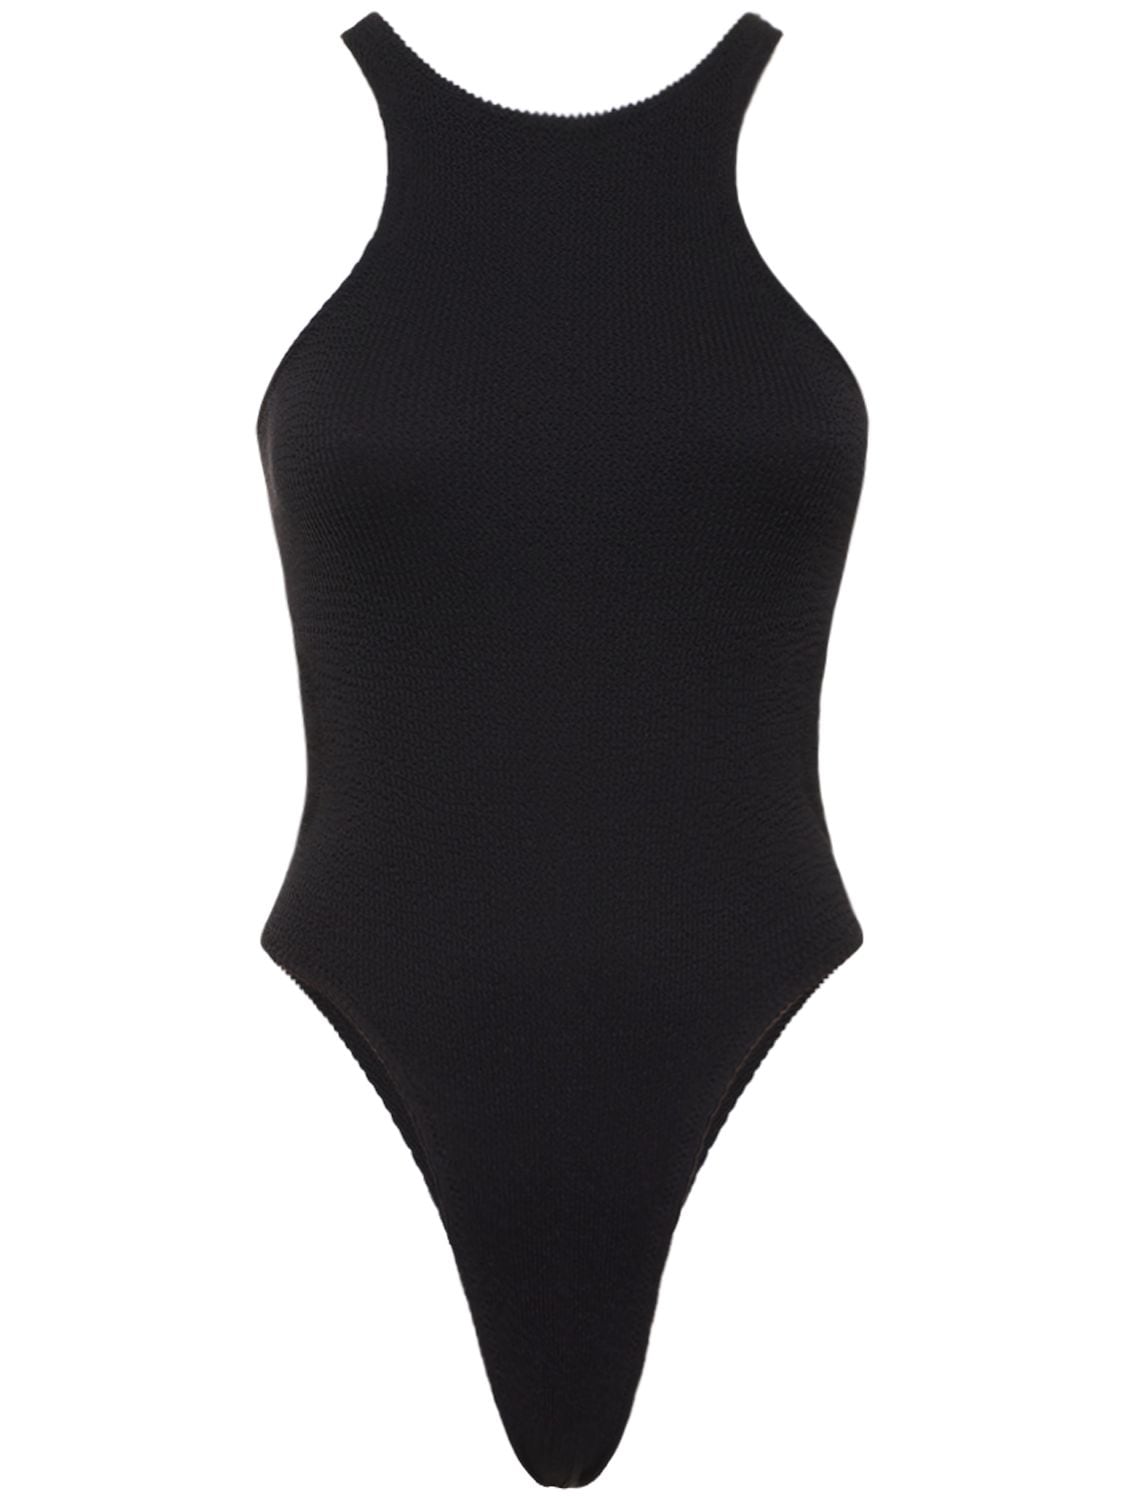 Windsurfer Crickle One Piece Swimsuit – WOMEN > CLOTHING > SWIMWEAR